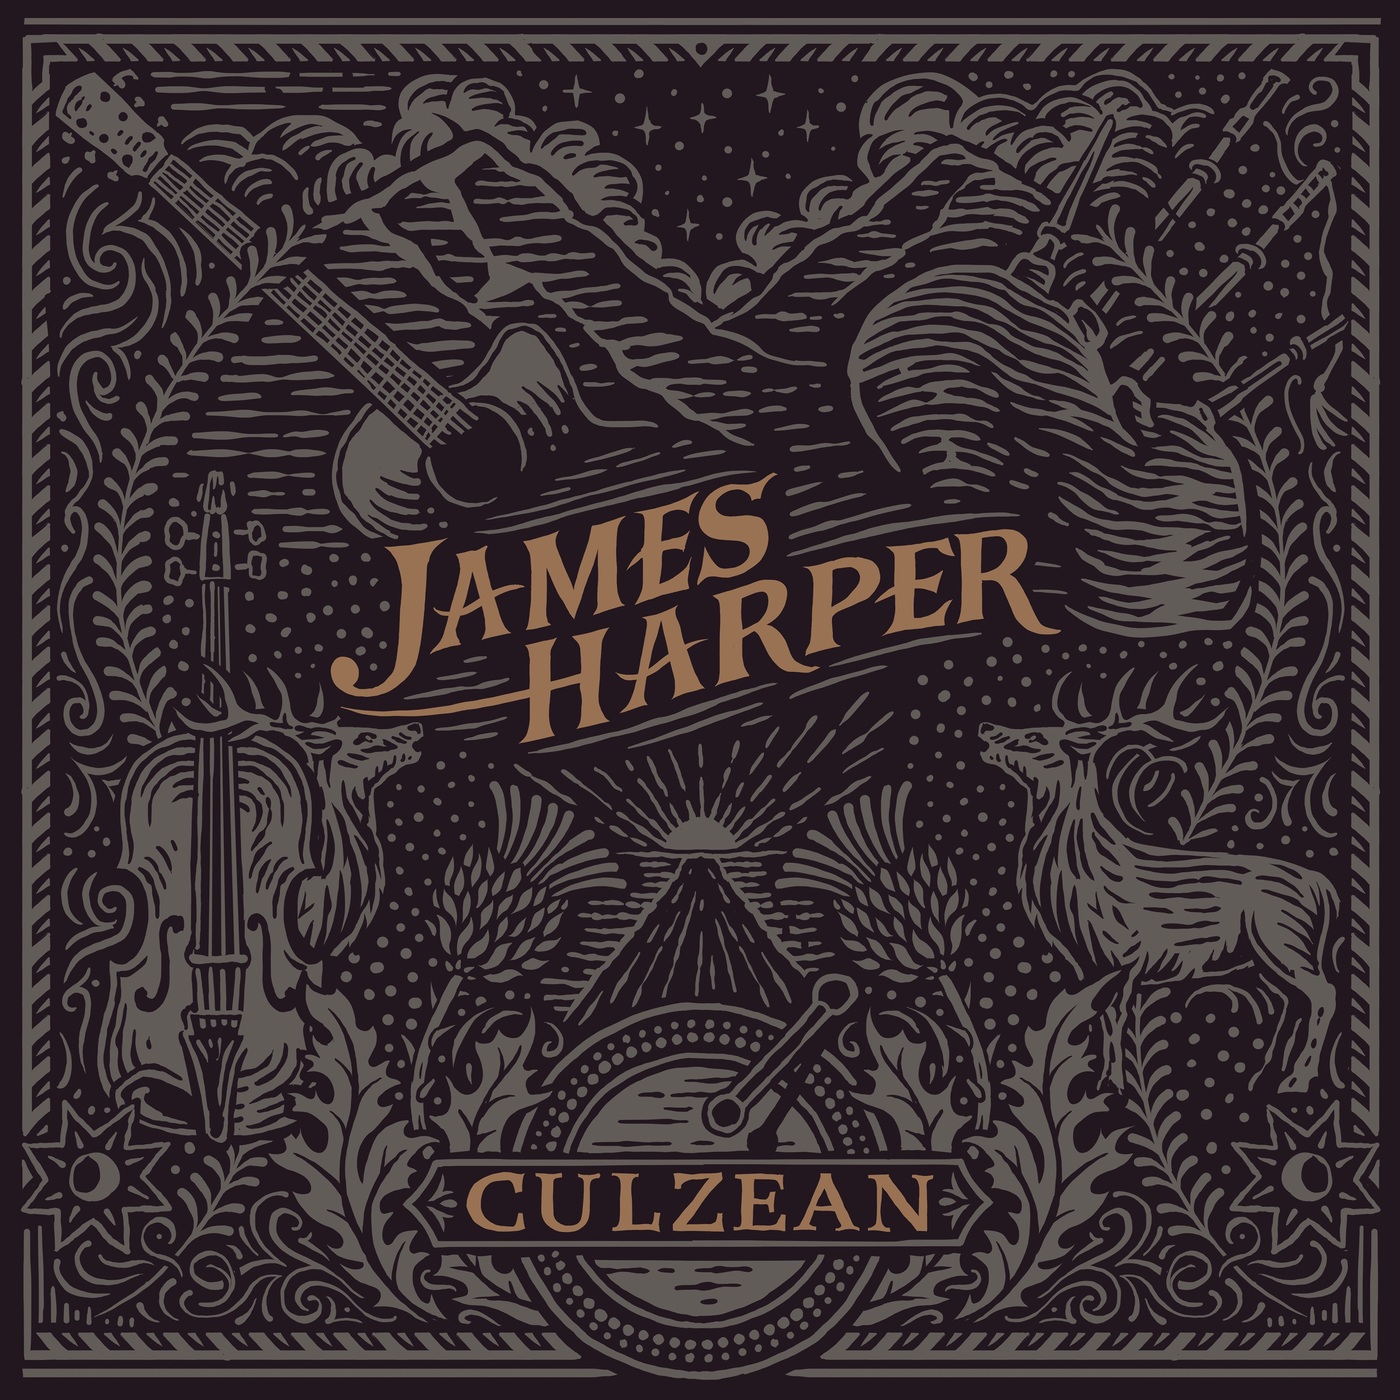 James Harper – 2020 - Culzean